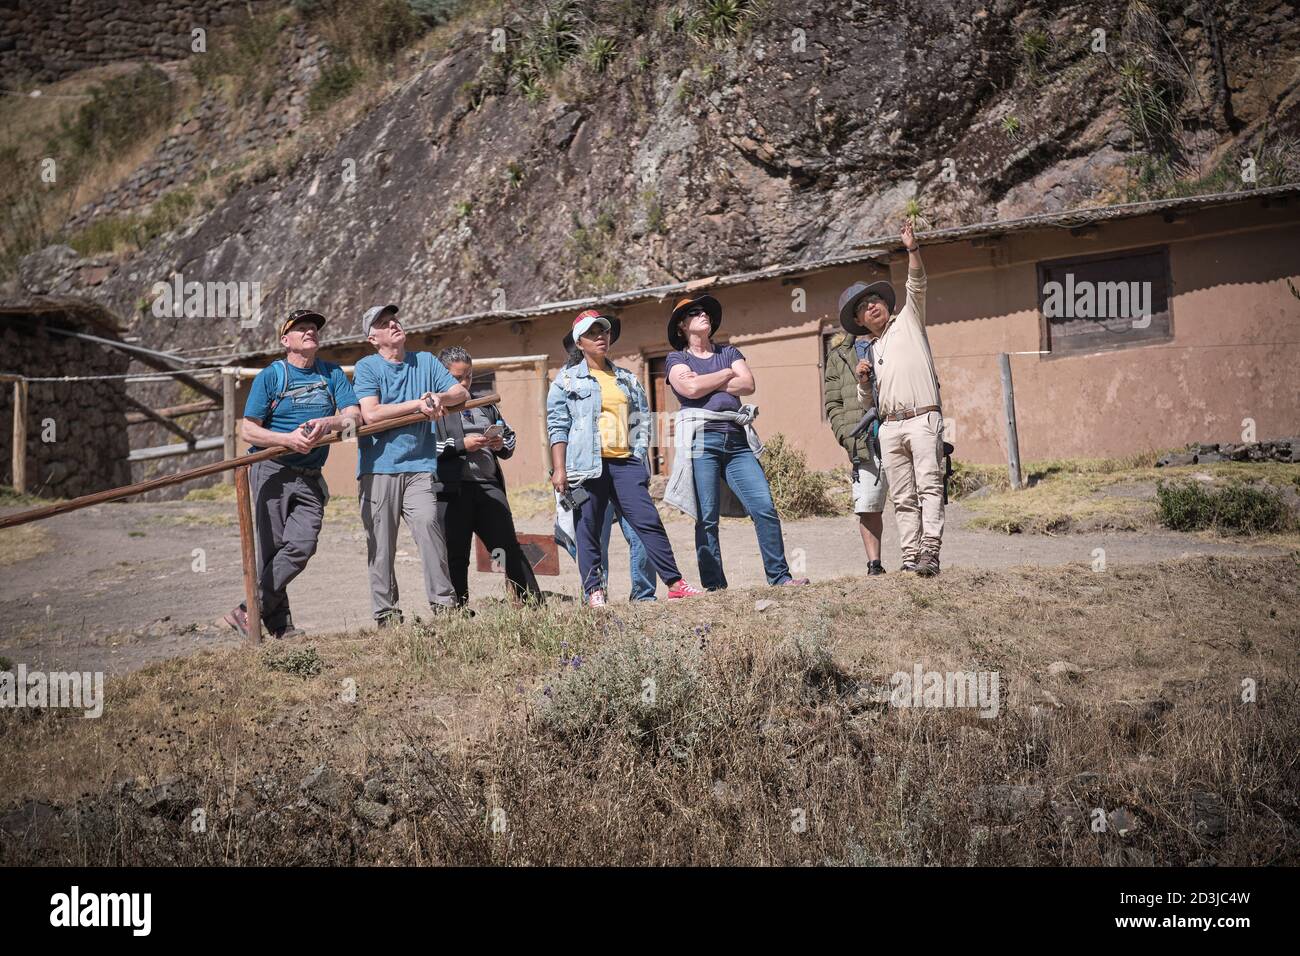 A guide showing tourists around Pisaq Pisac Incan site, Peru Stock Photo